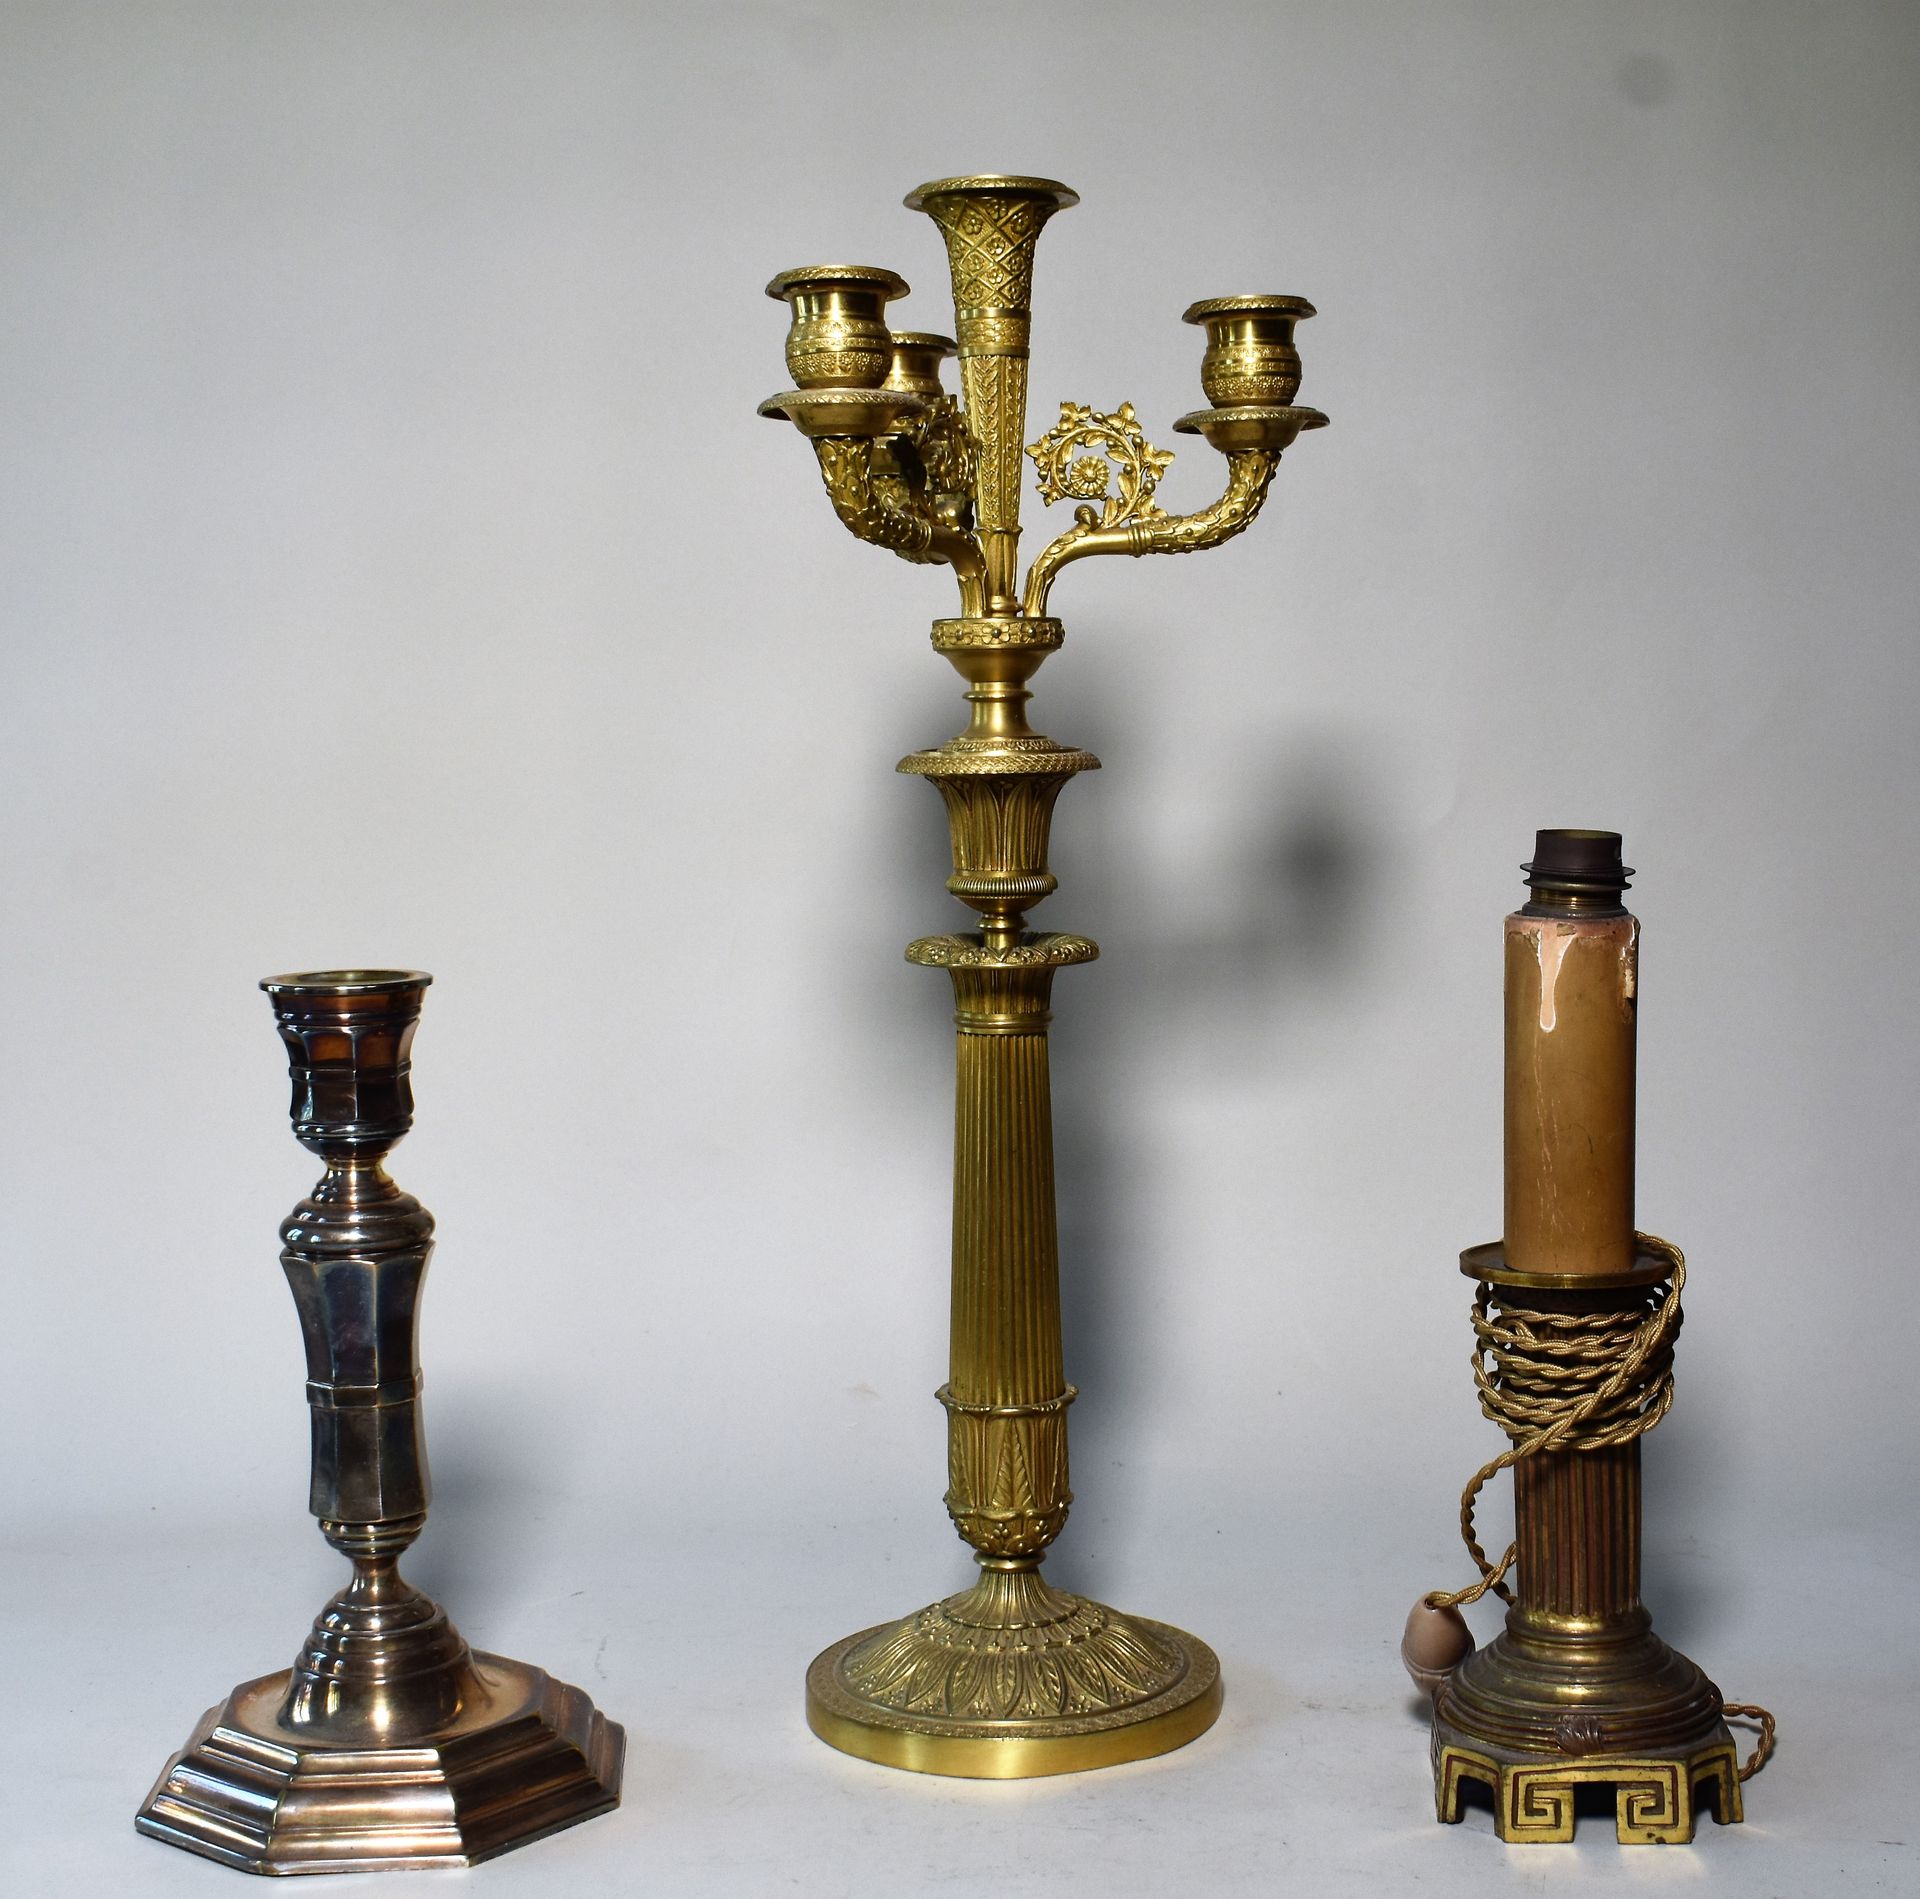 Null CANDELABRO de bronce dorado de cuatro luces, siglo XIX. Altura 48 cm

CONJU&hellip;